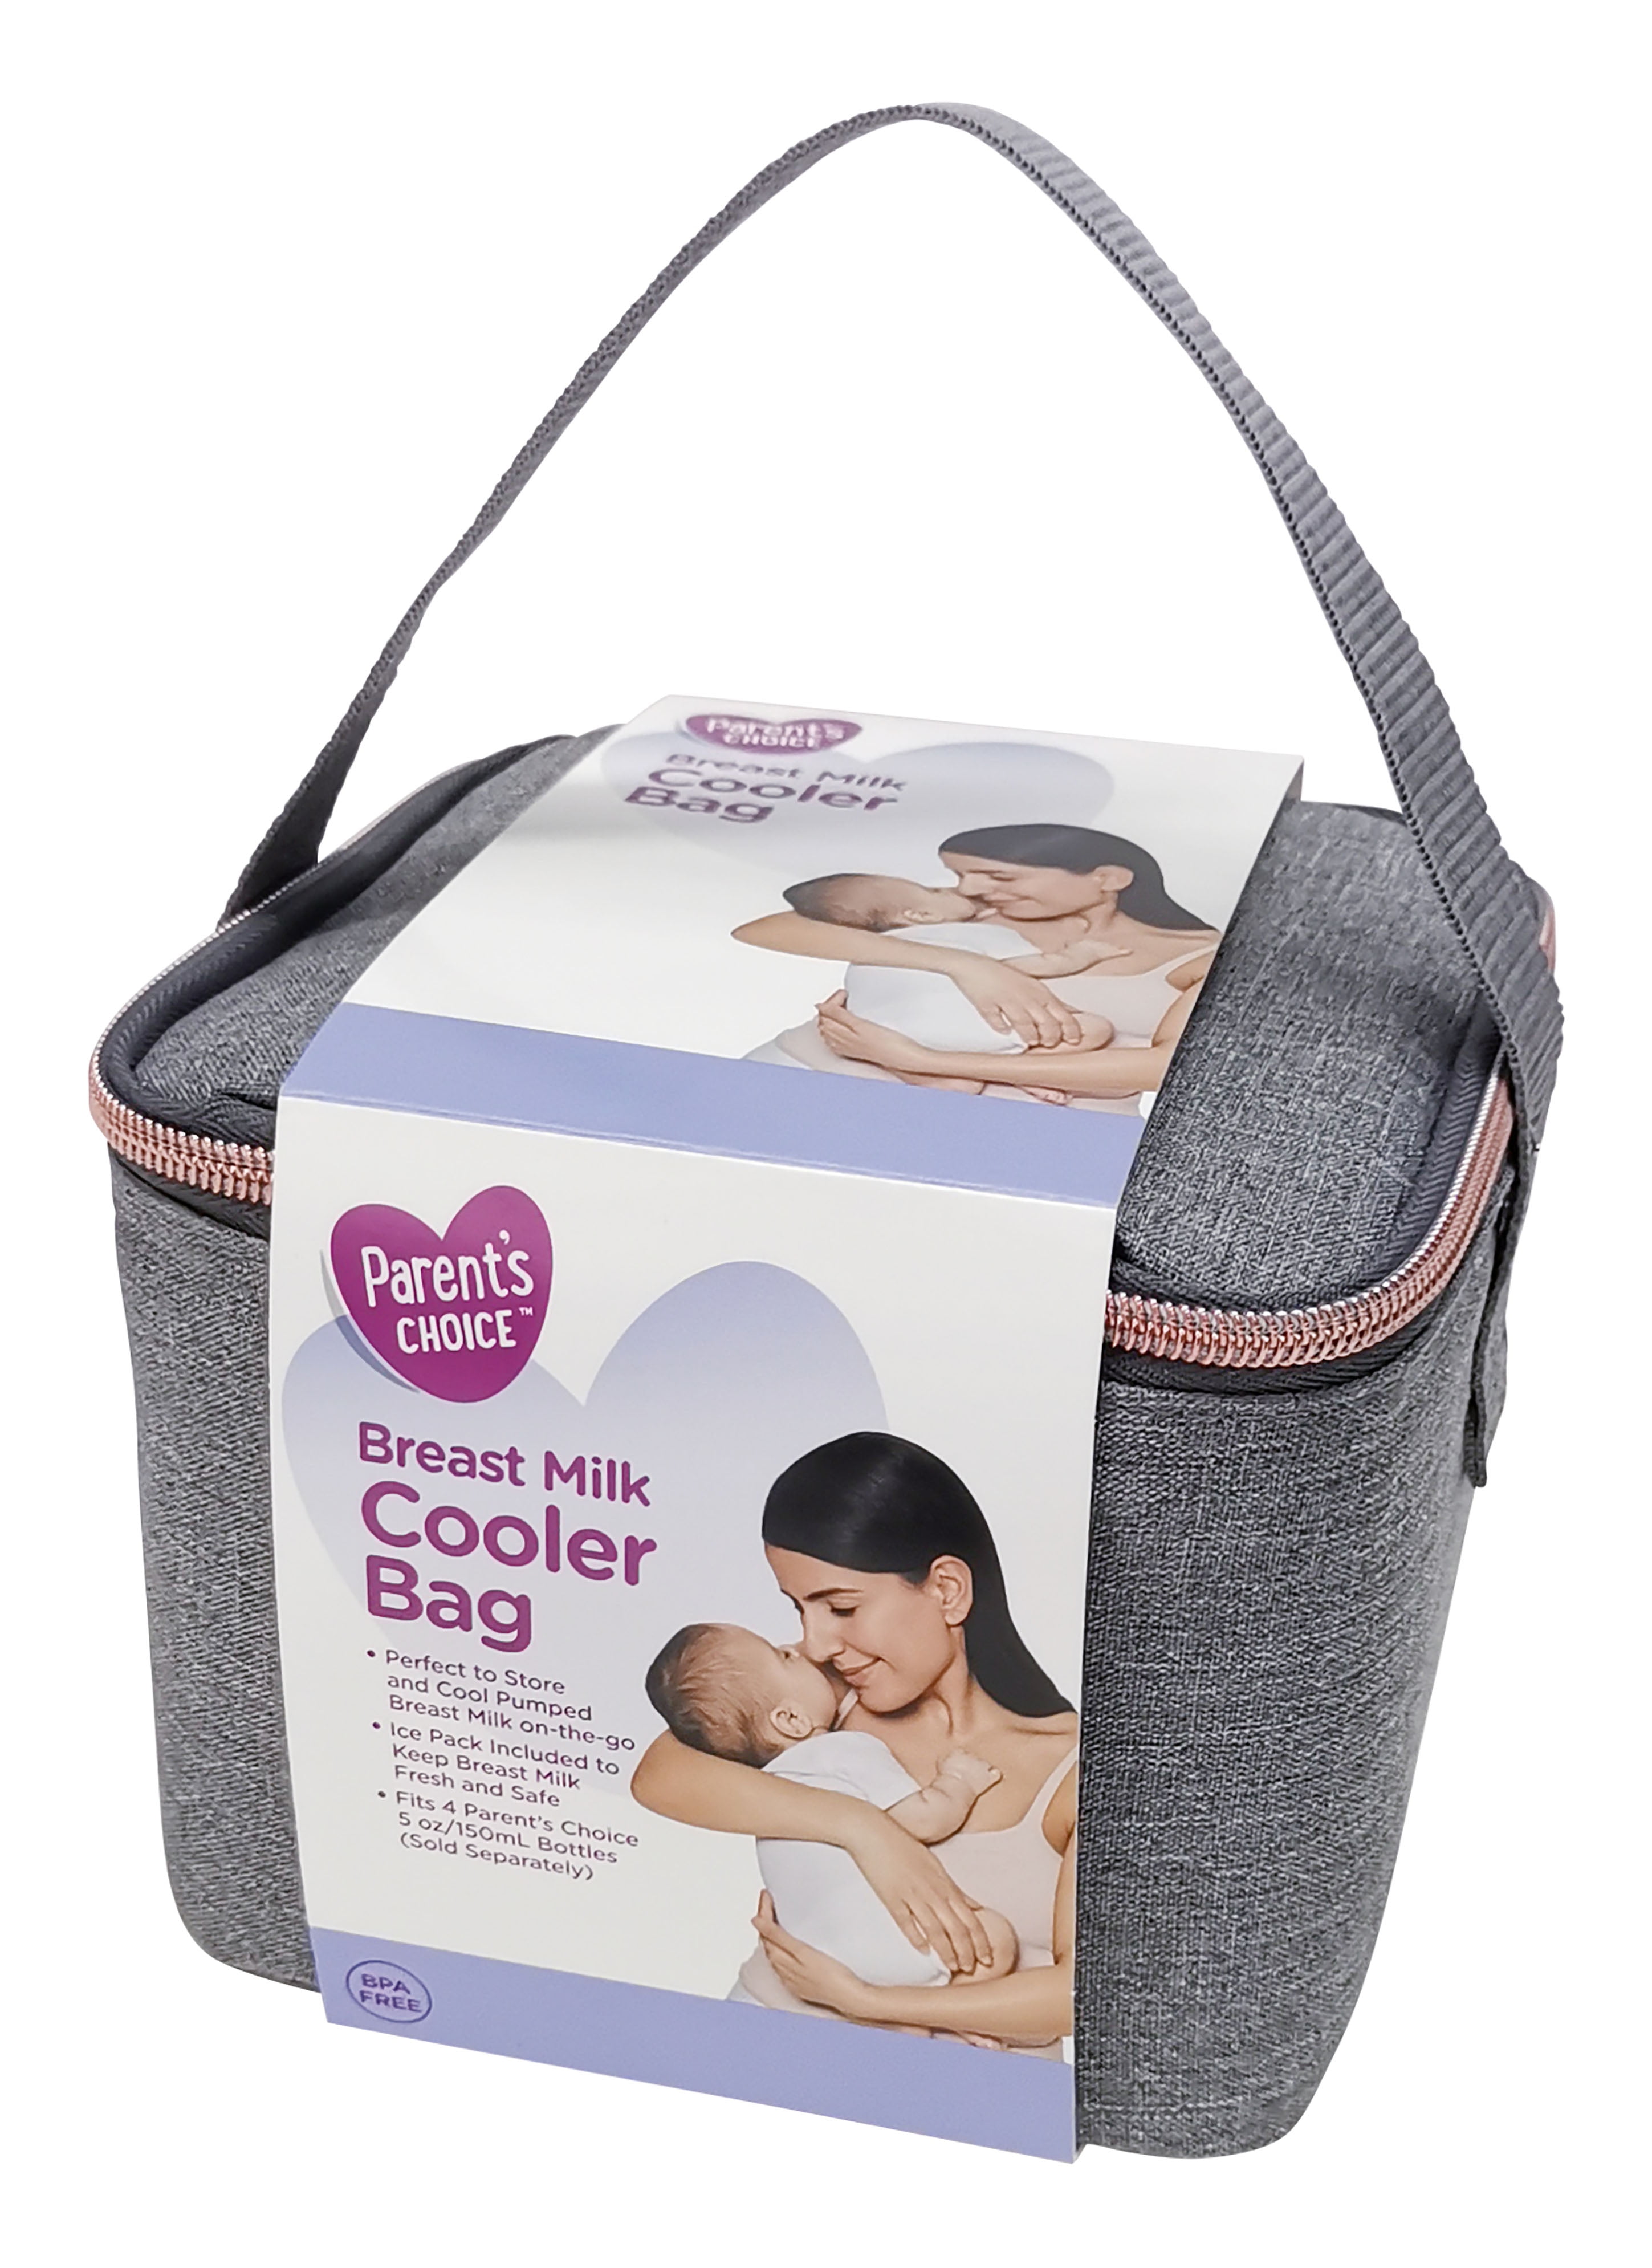 Best breast milk cooler bags